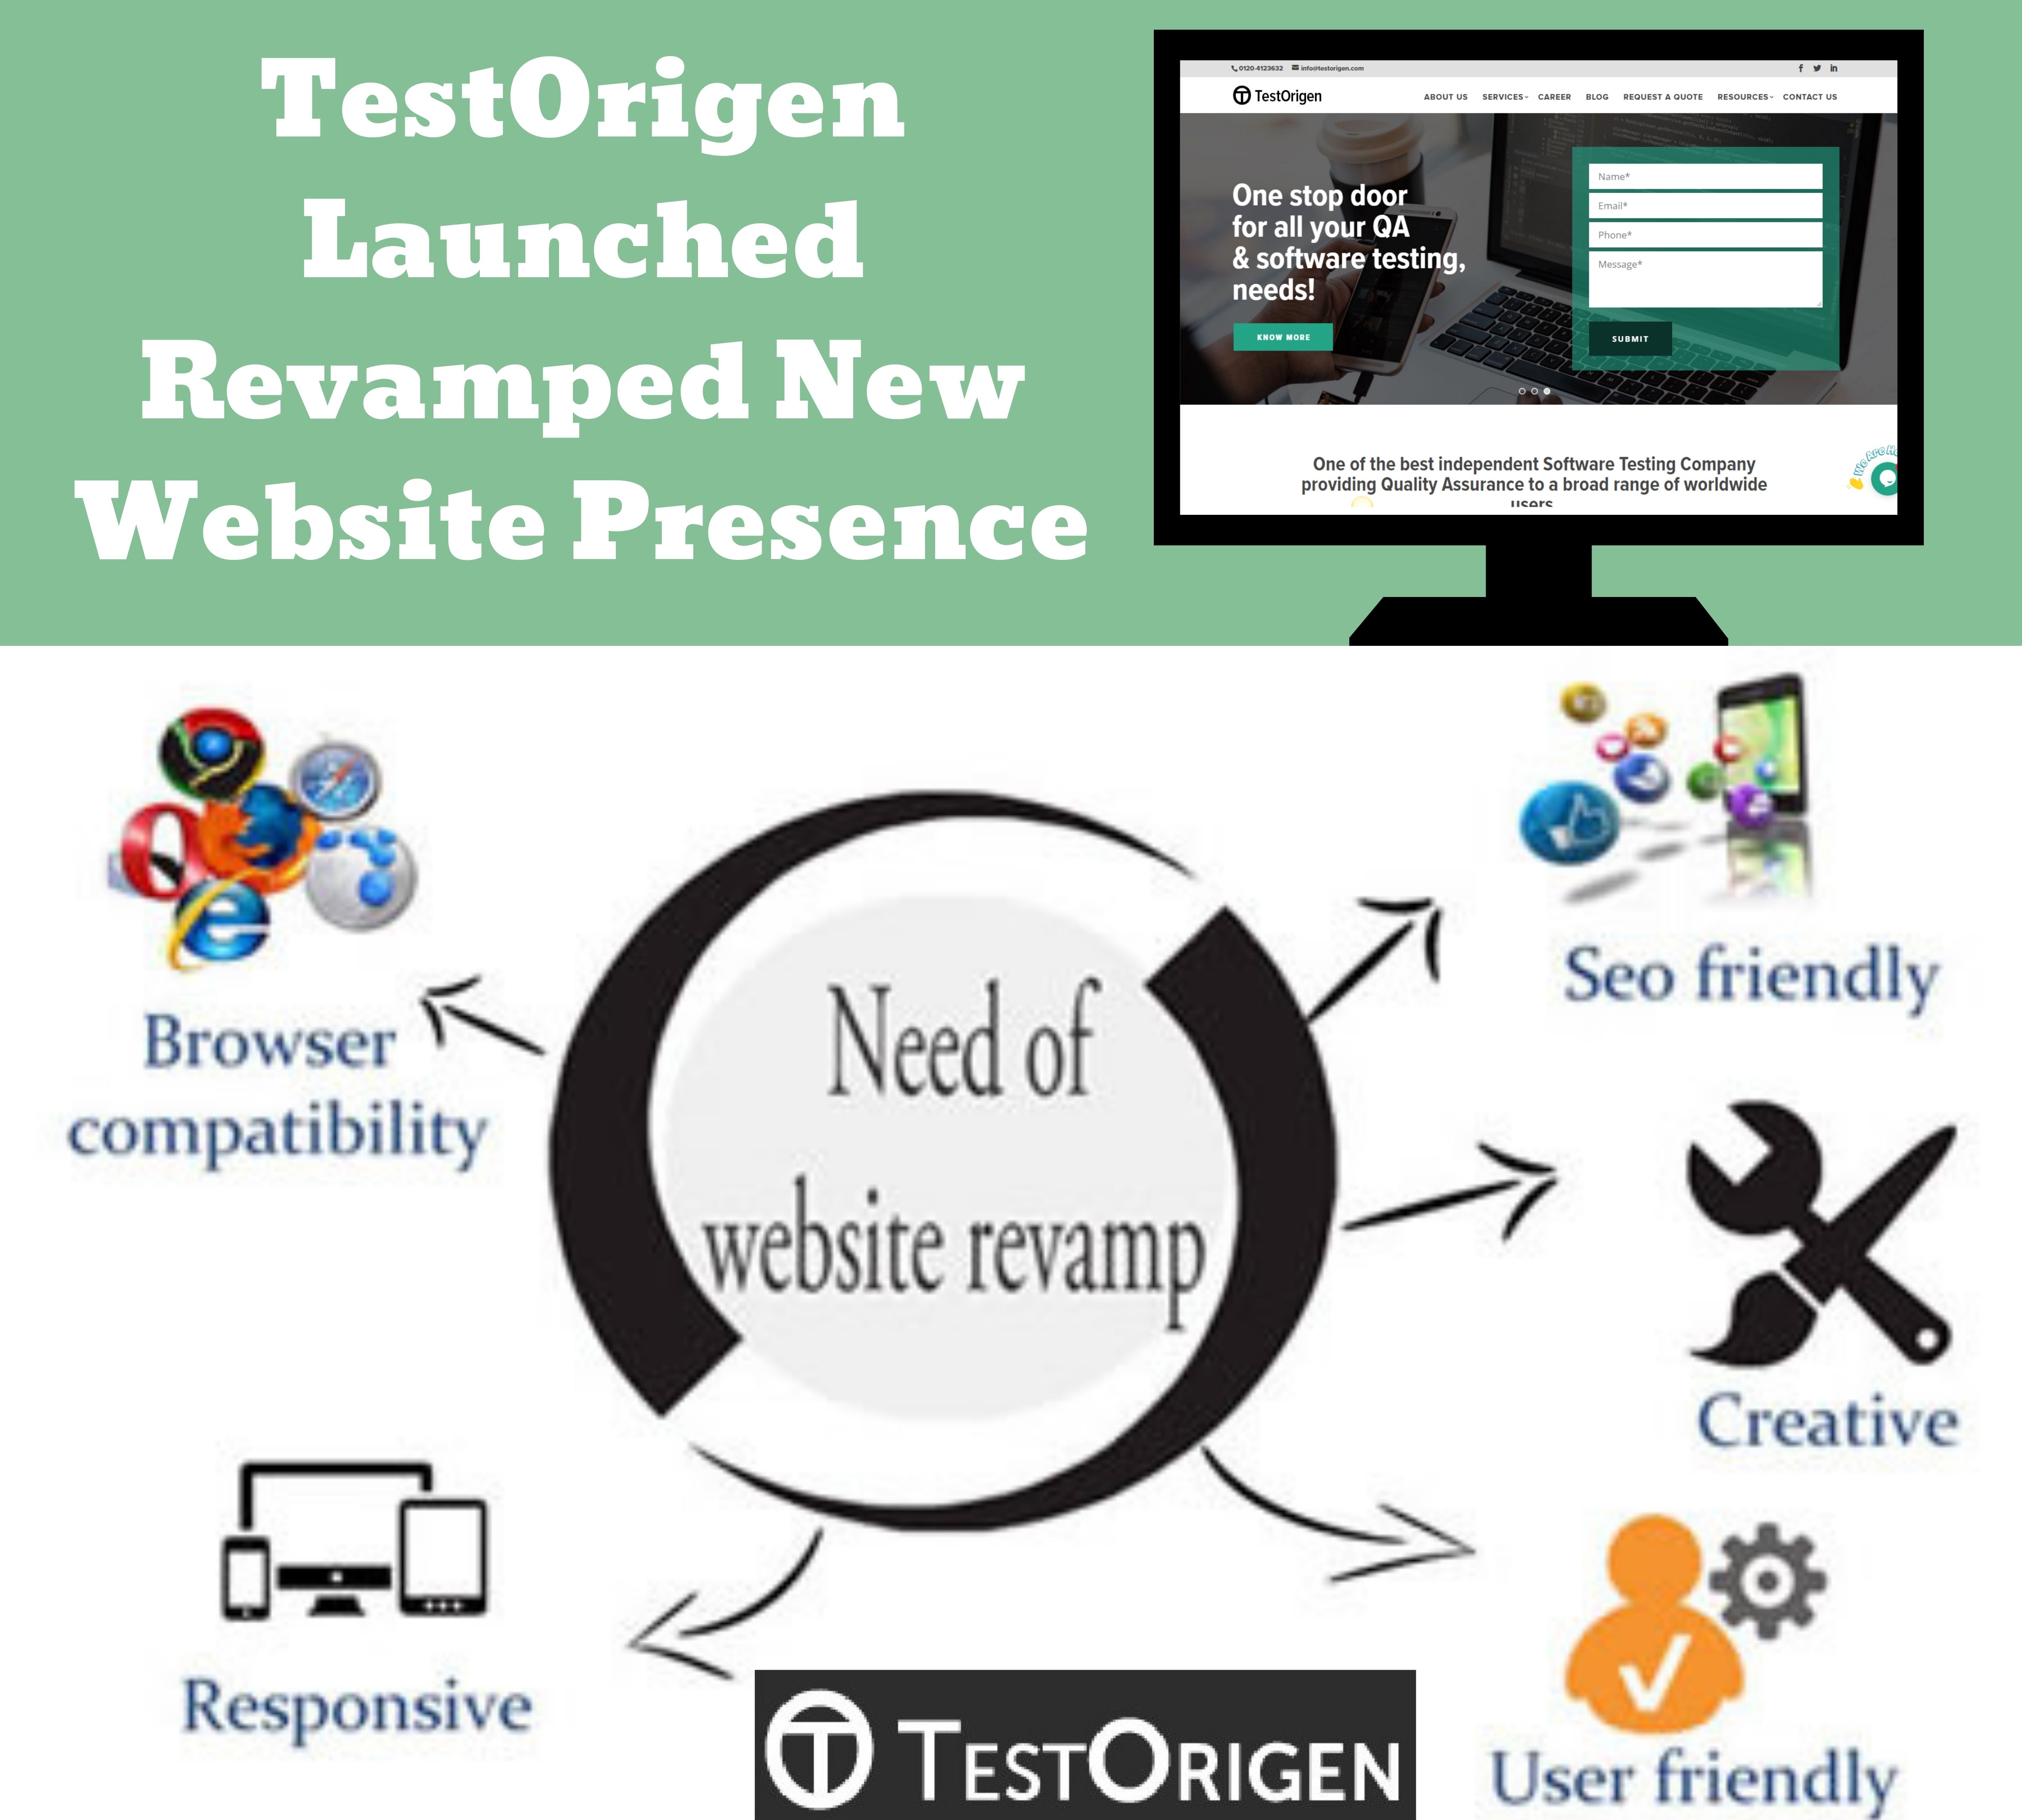 TestOrigen Launched Revamped New Website Presence